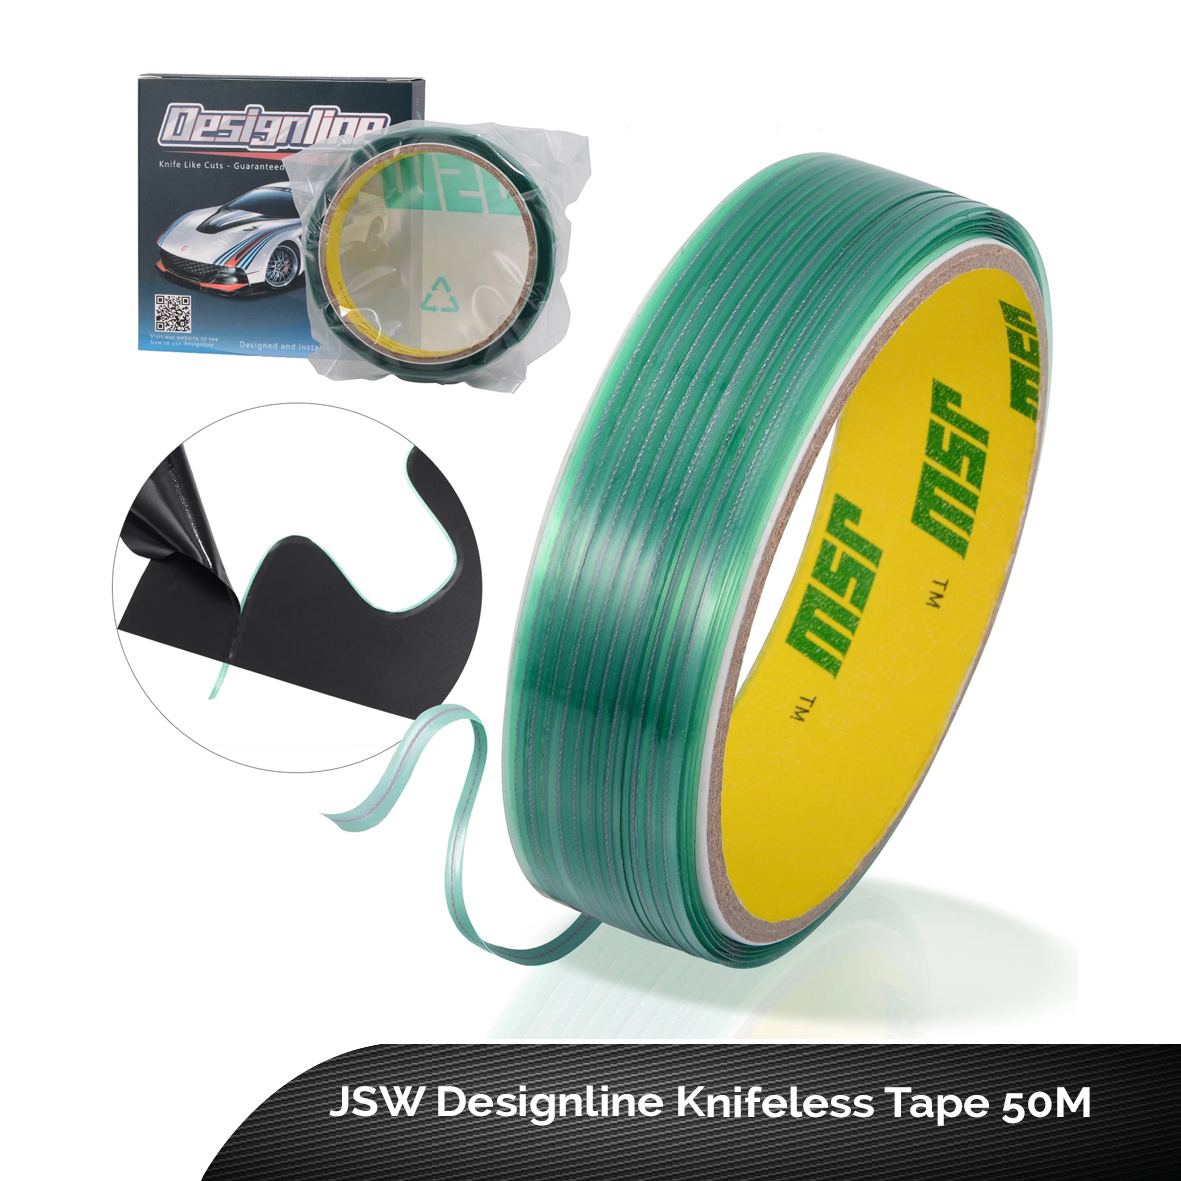 JSW Designline Knifeless Tape 50M - RT Media Solutions